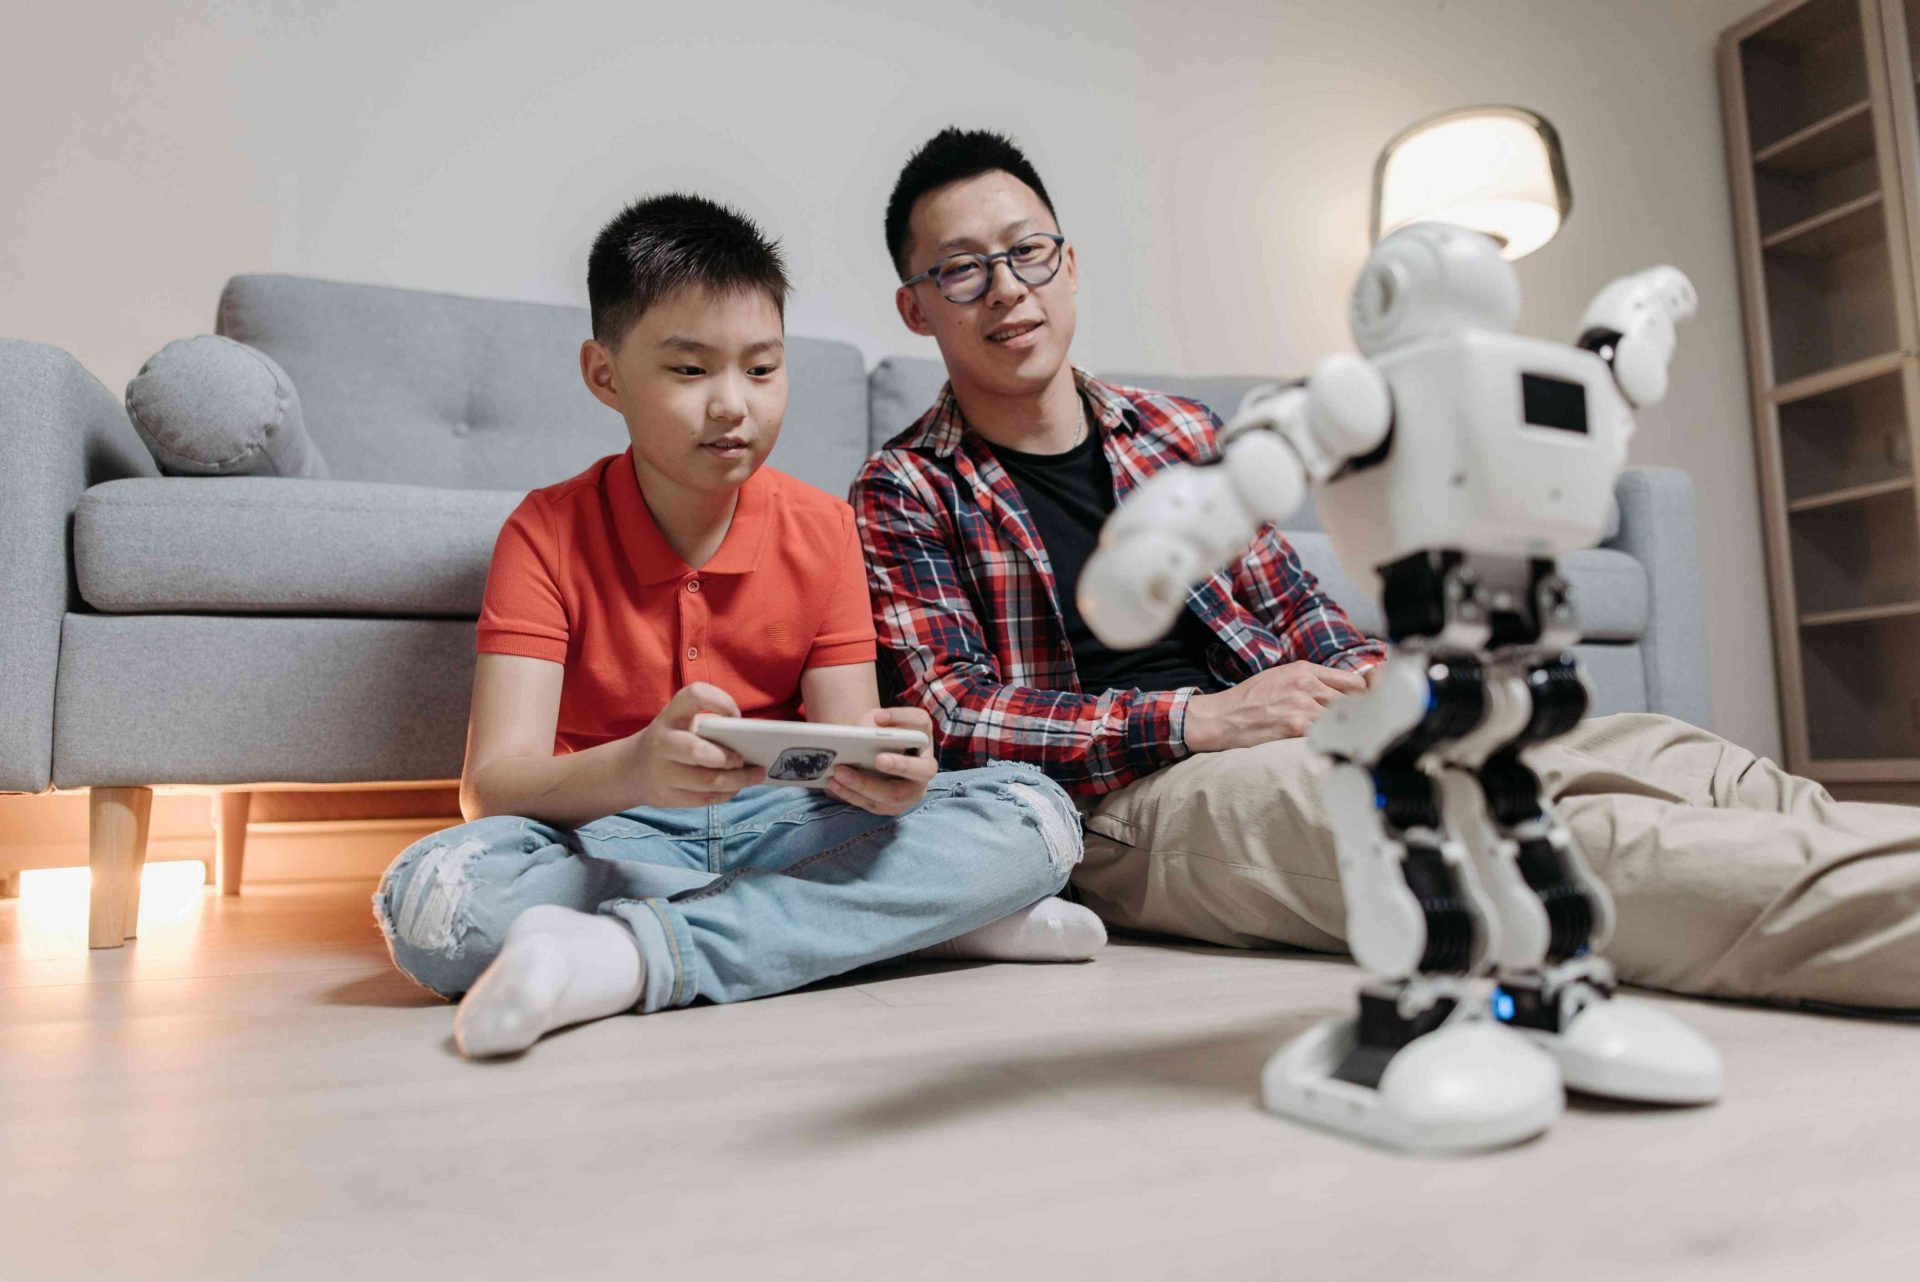 pai e filho brincando com robô na sala